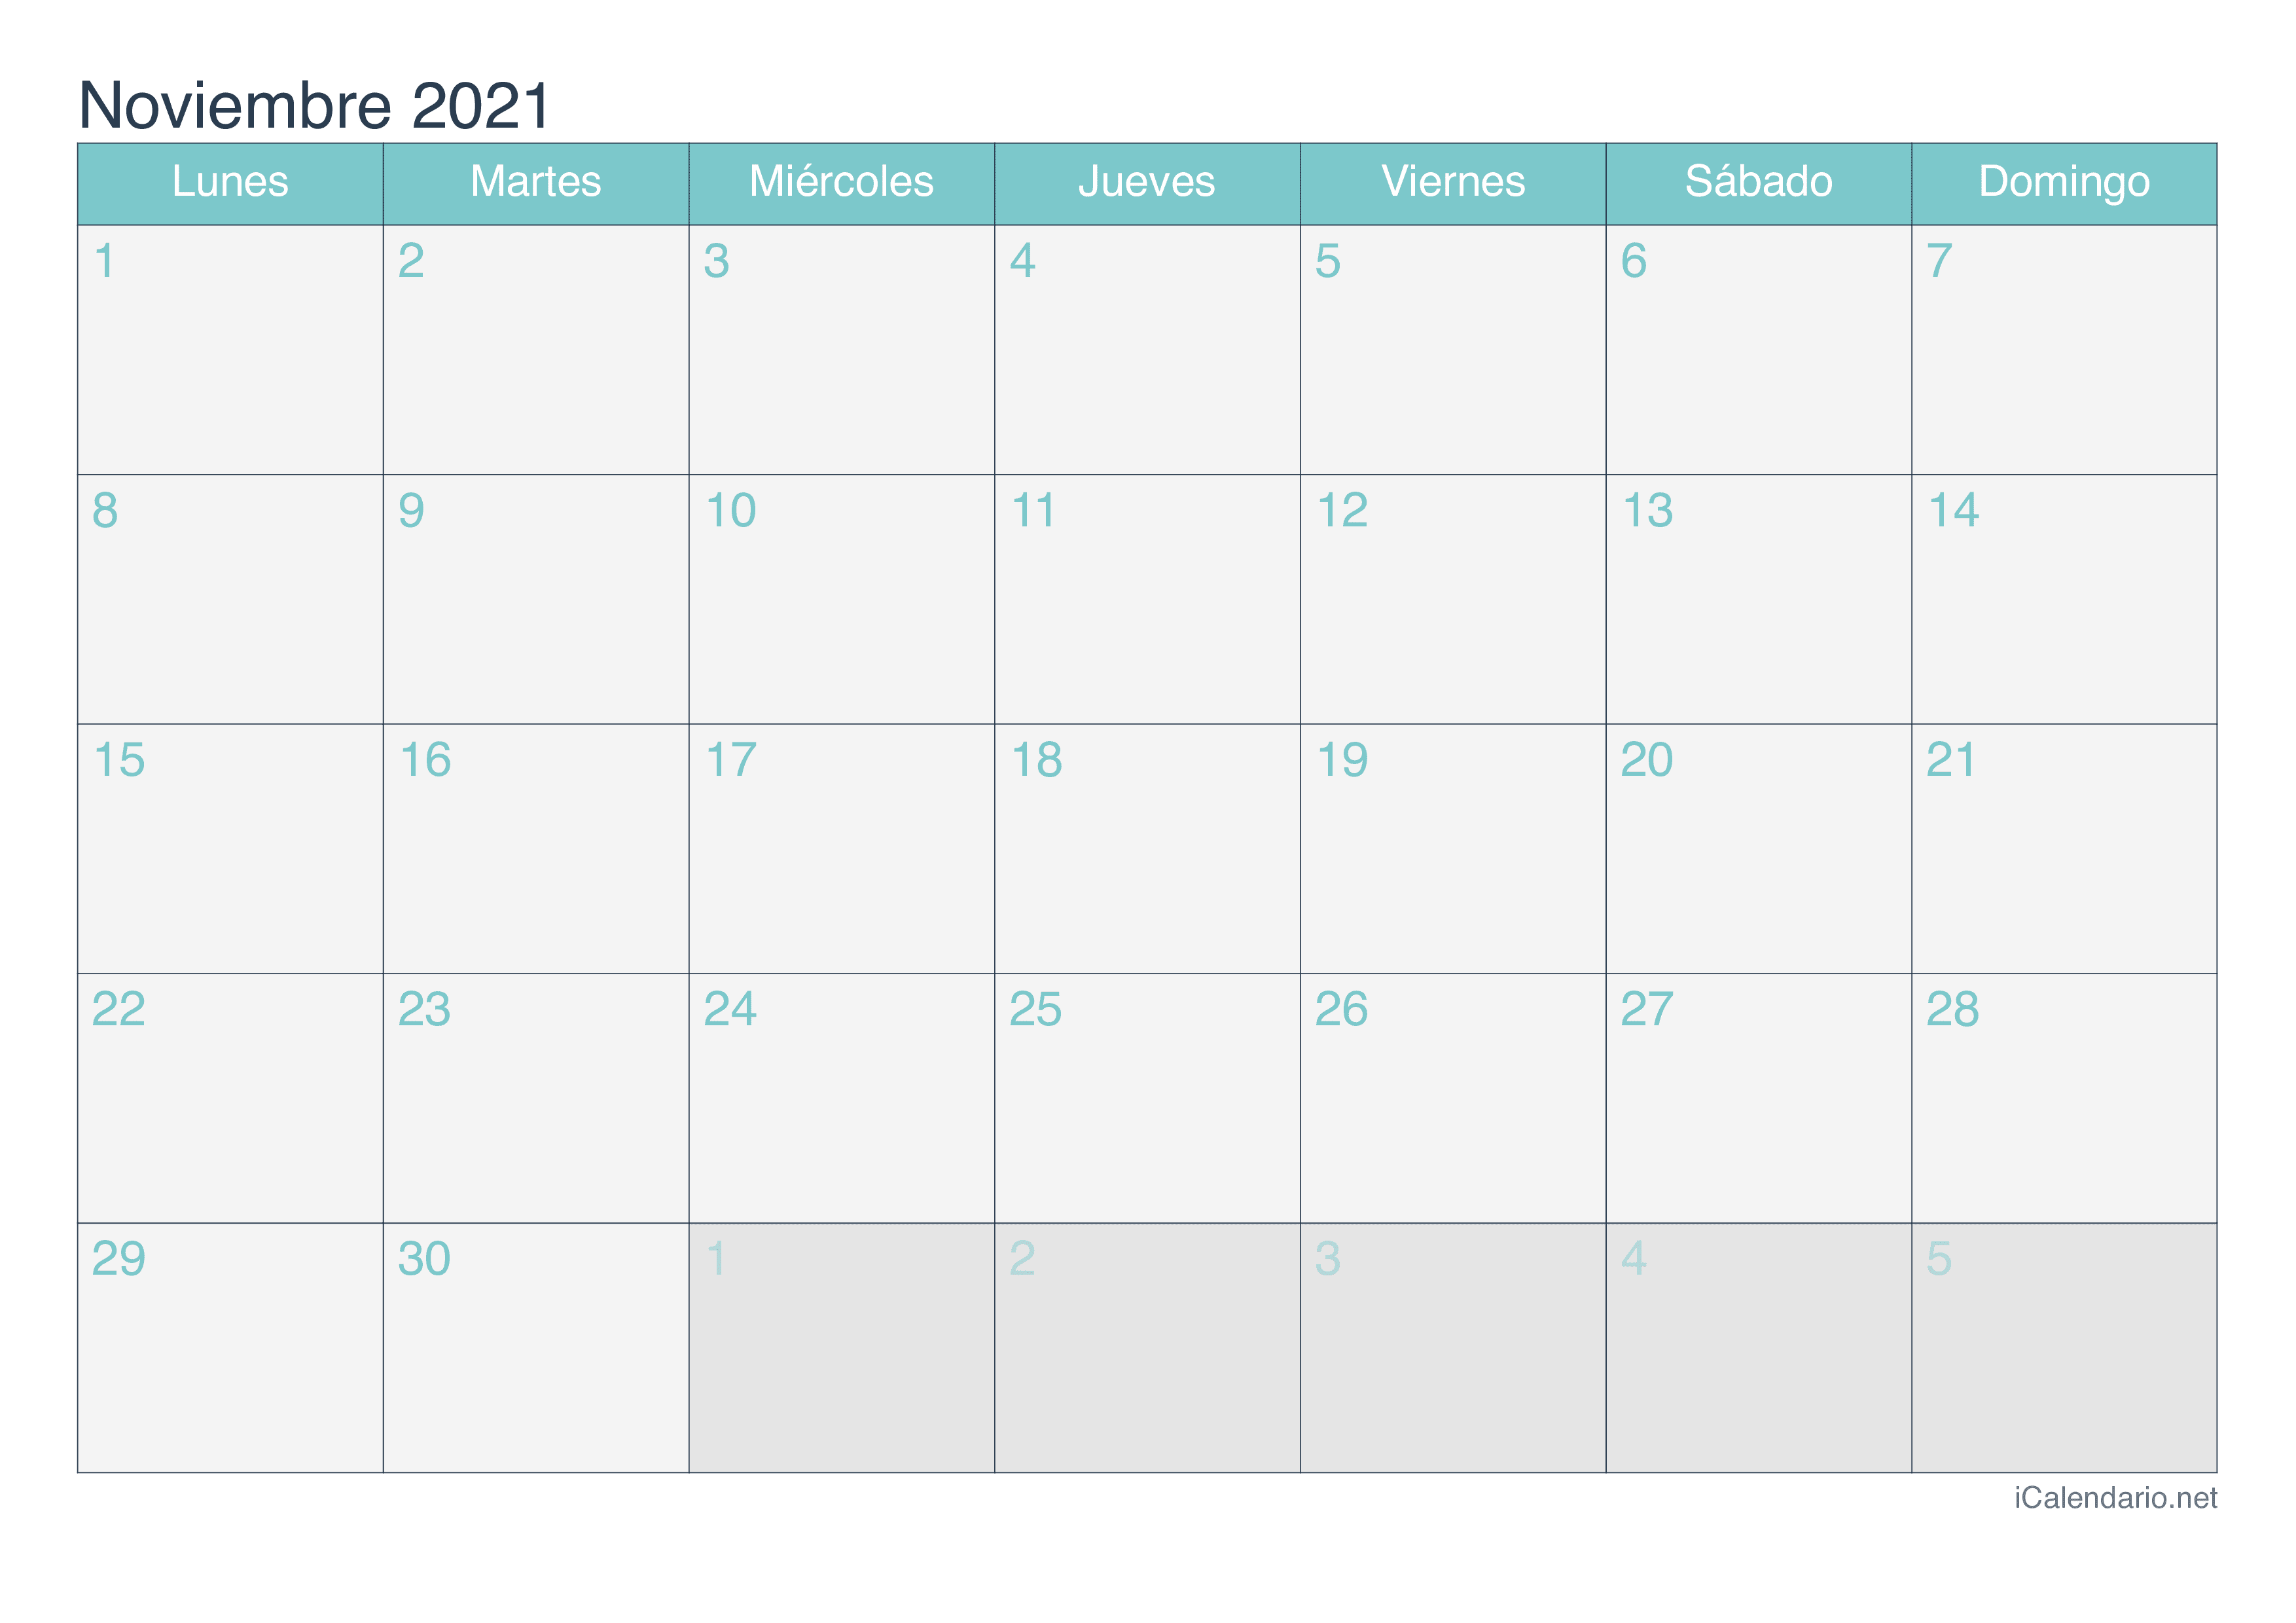 Calendario noviembre 2021 para imprimir - iCalendario.net